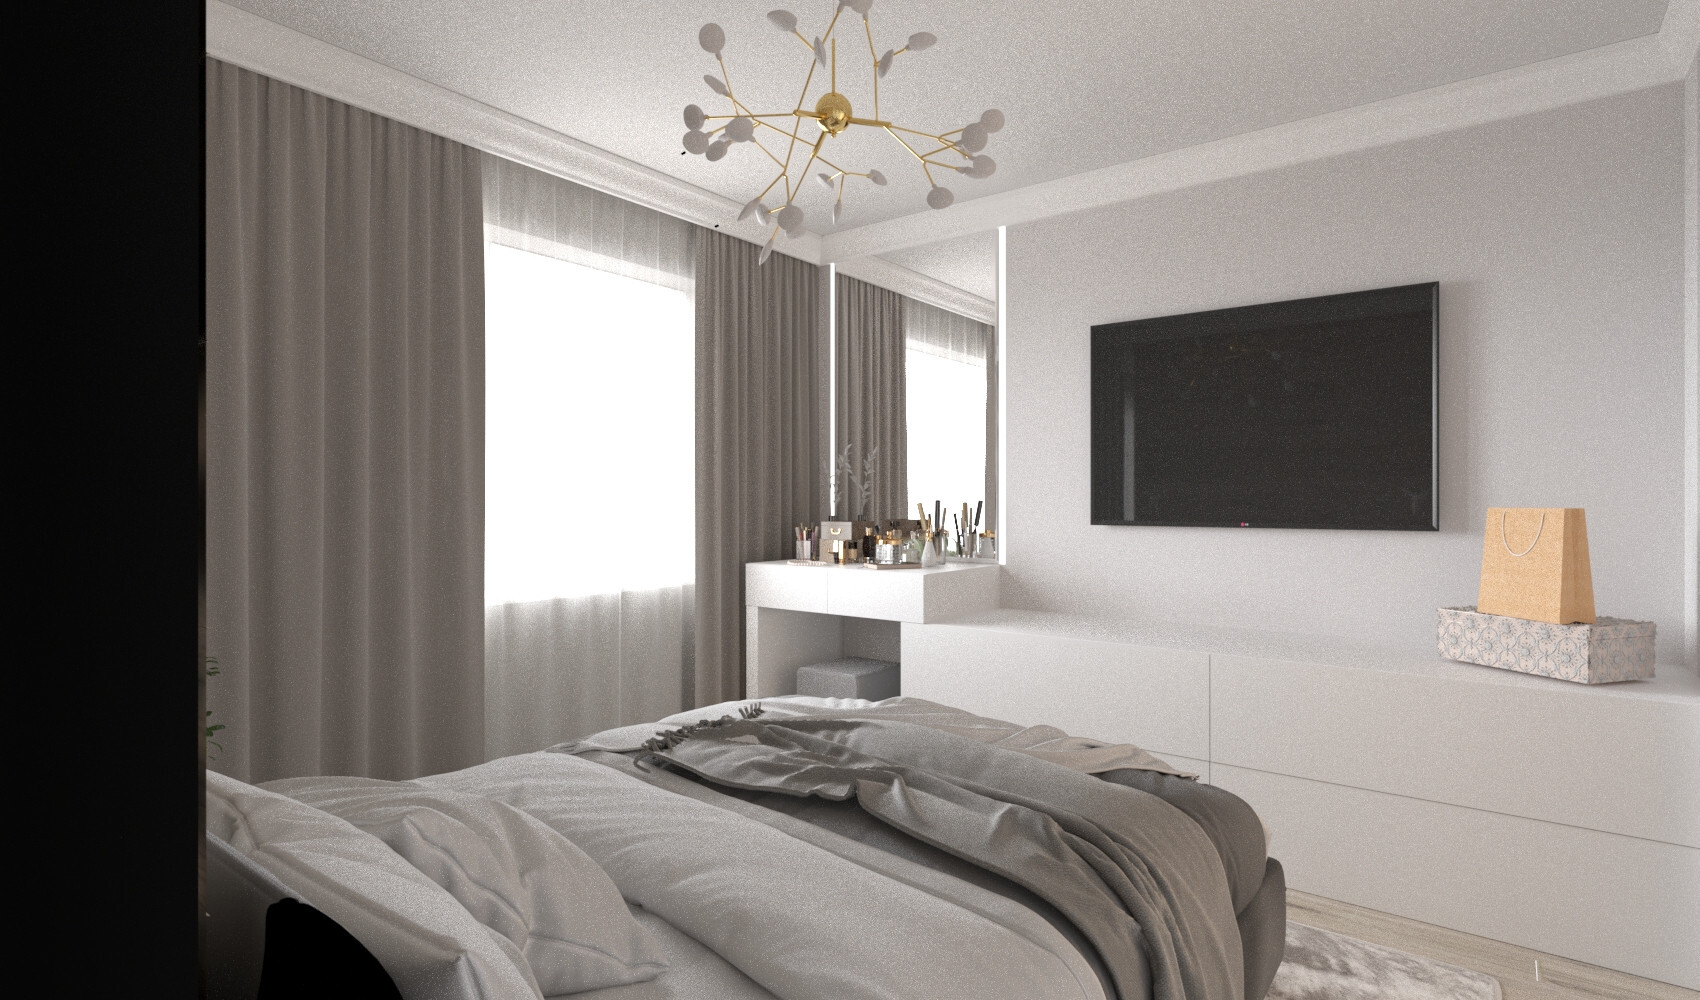 Интерьер спальни cветовыми линиями и светильниками над кроватью в современном стиле